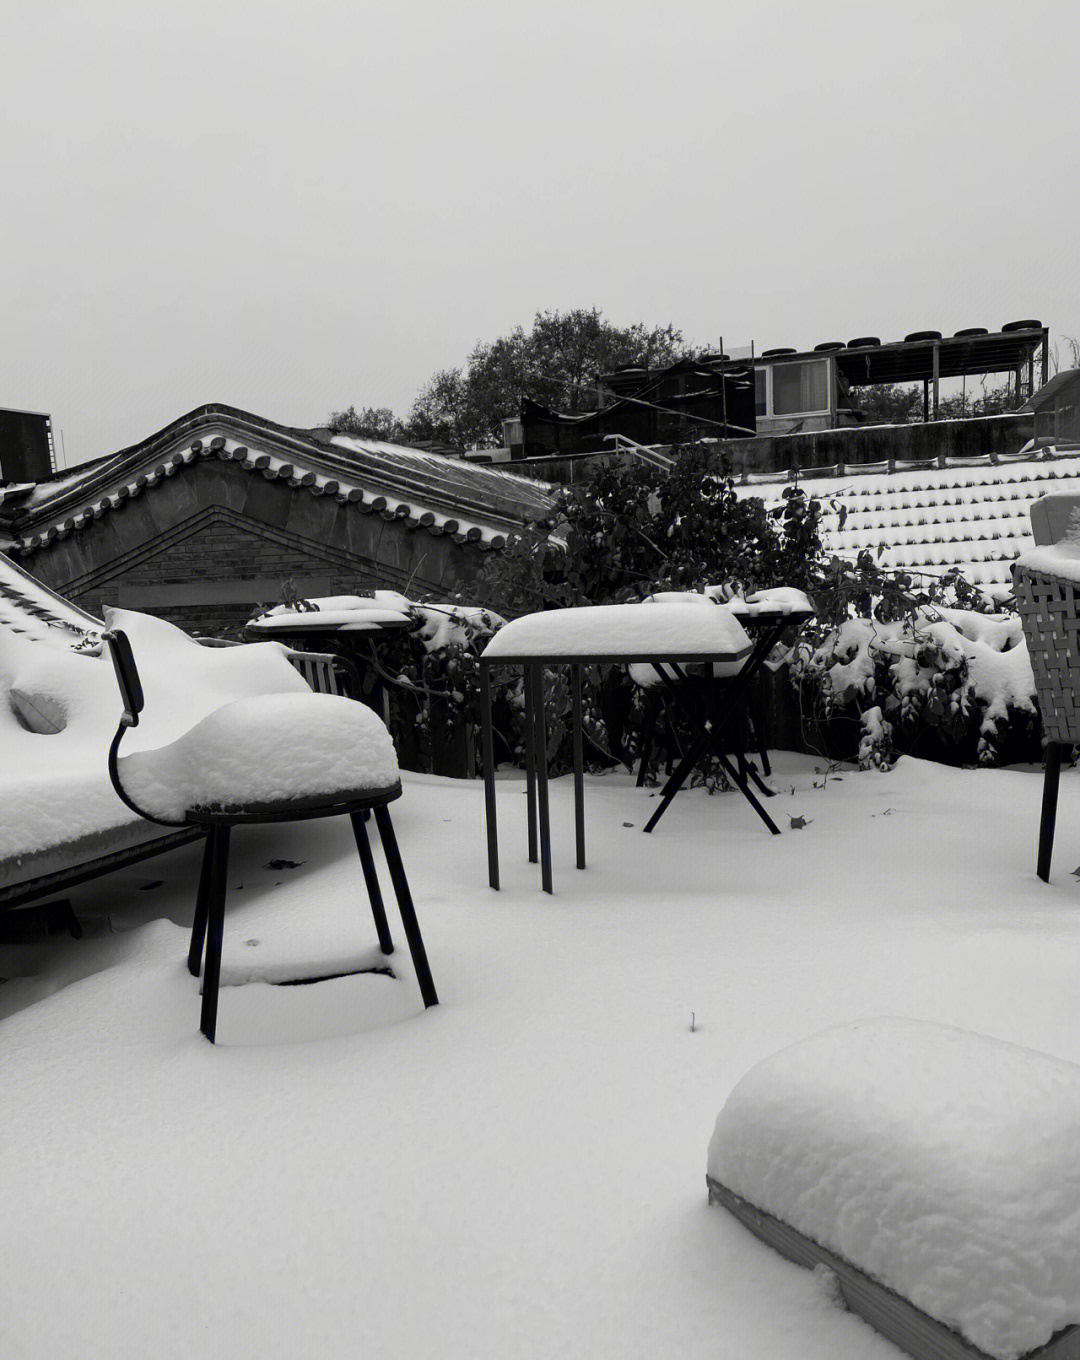 拍摄的一组南锣鼓巷四合院雪景